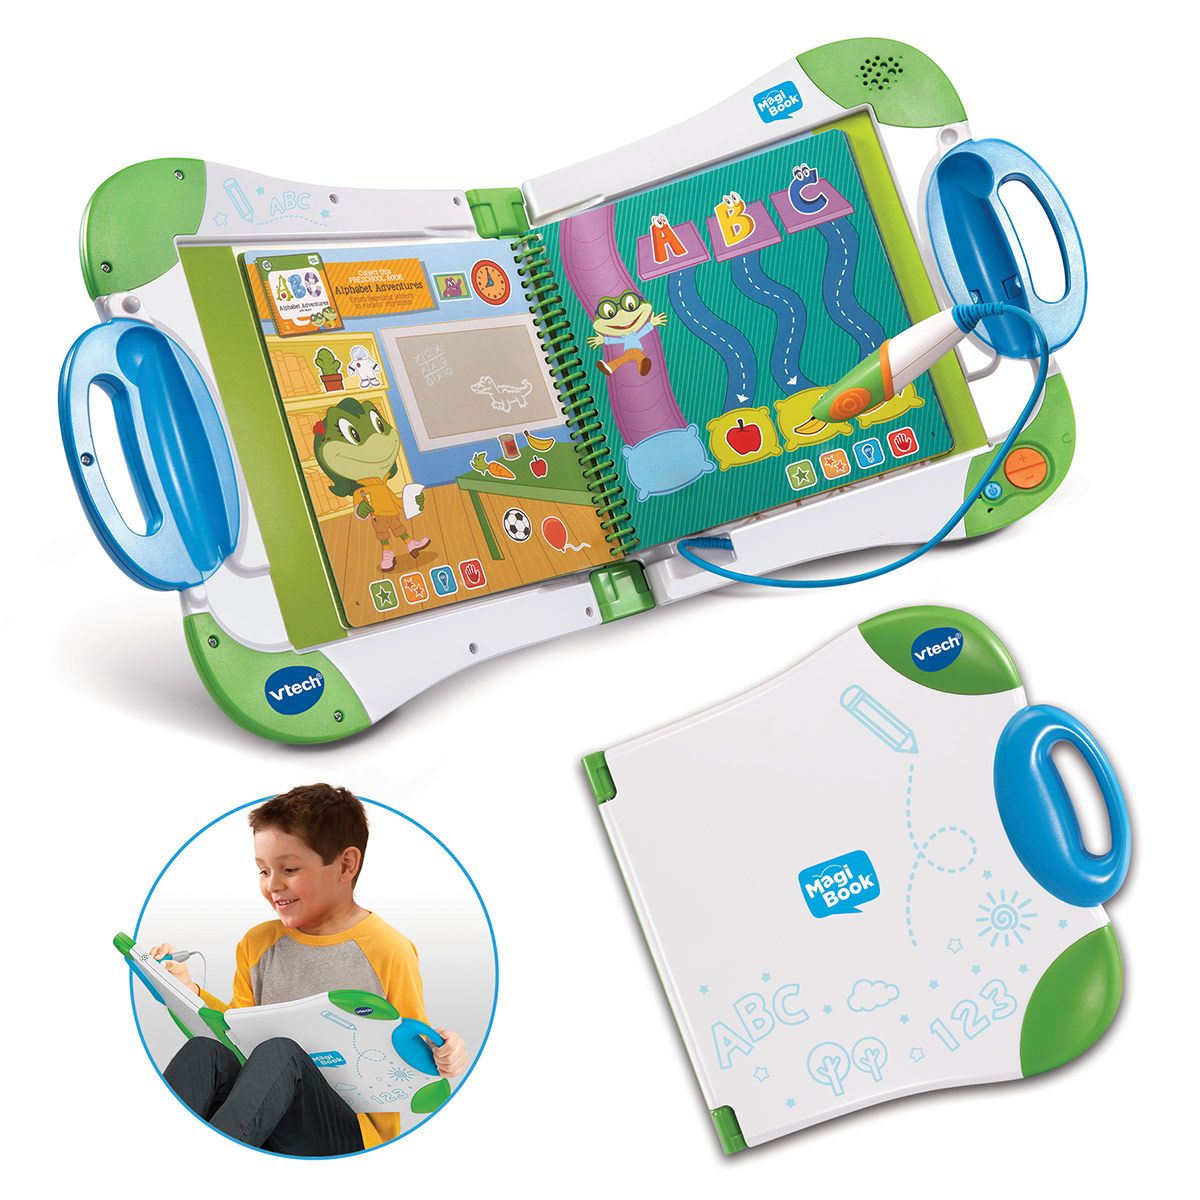  VTech- MagiBook, 481105 - Version FR : Toys & Games